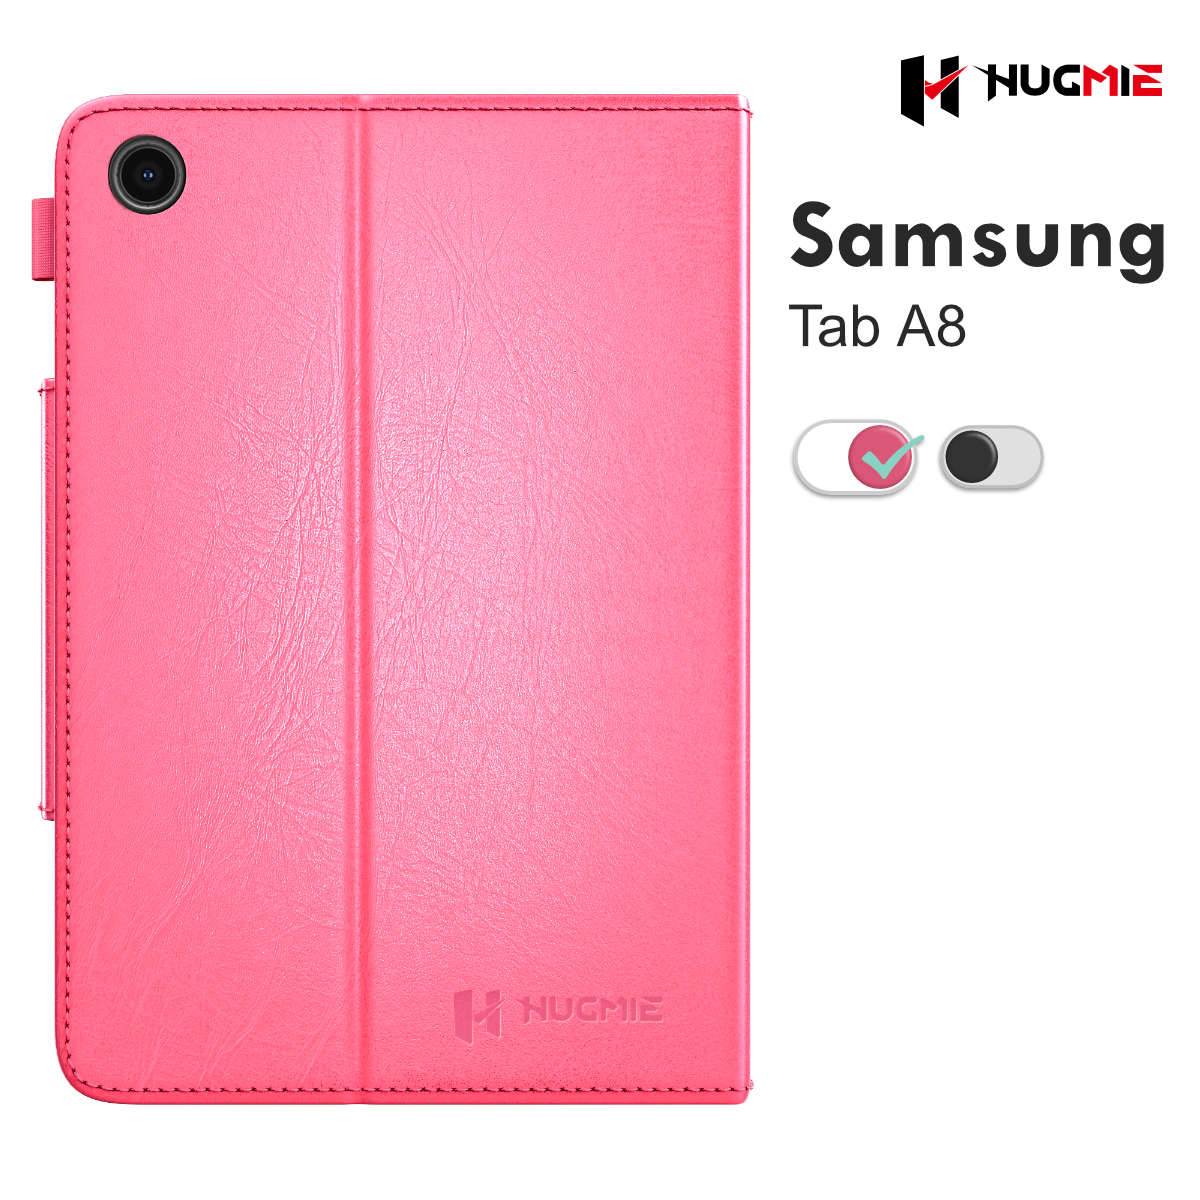 Samsung Galaxy Tab A8 Leather Folio Case | Hugmie